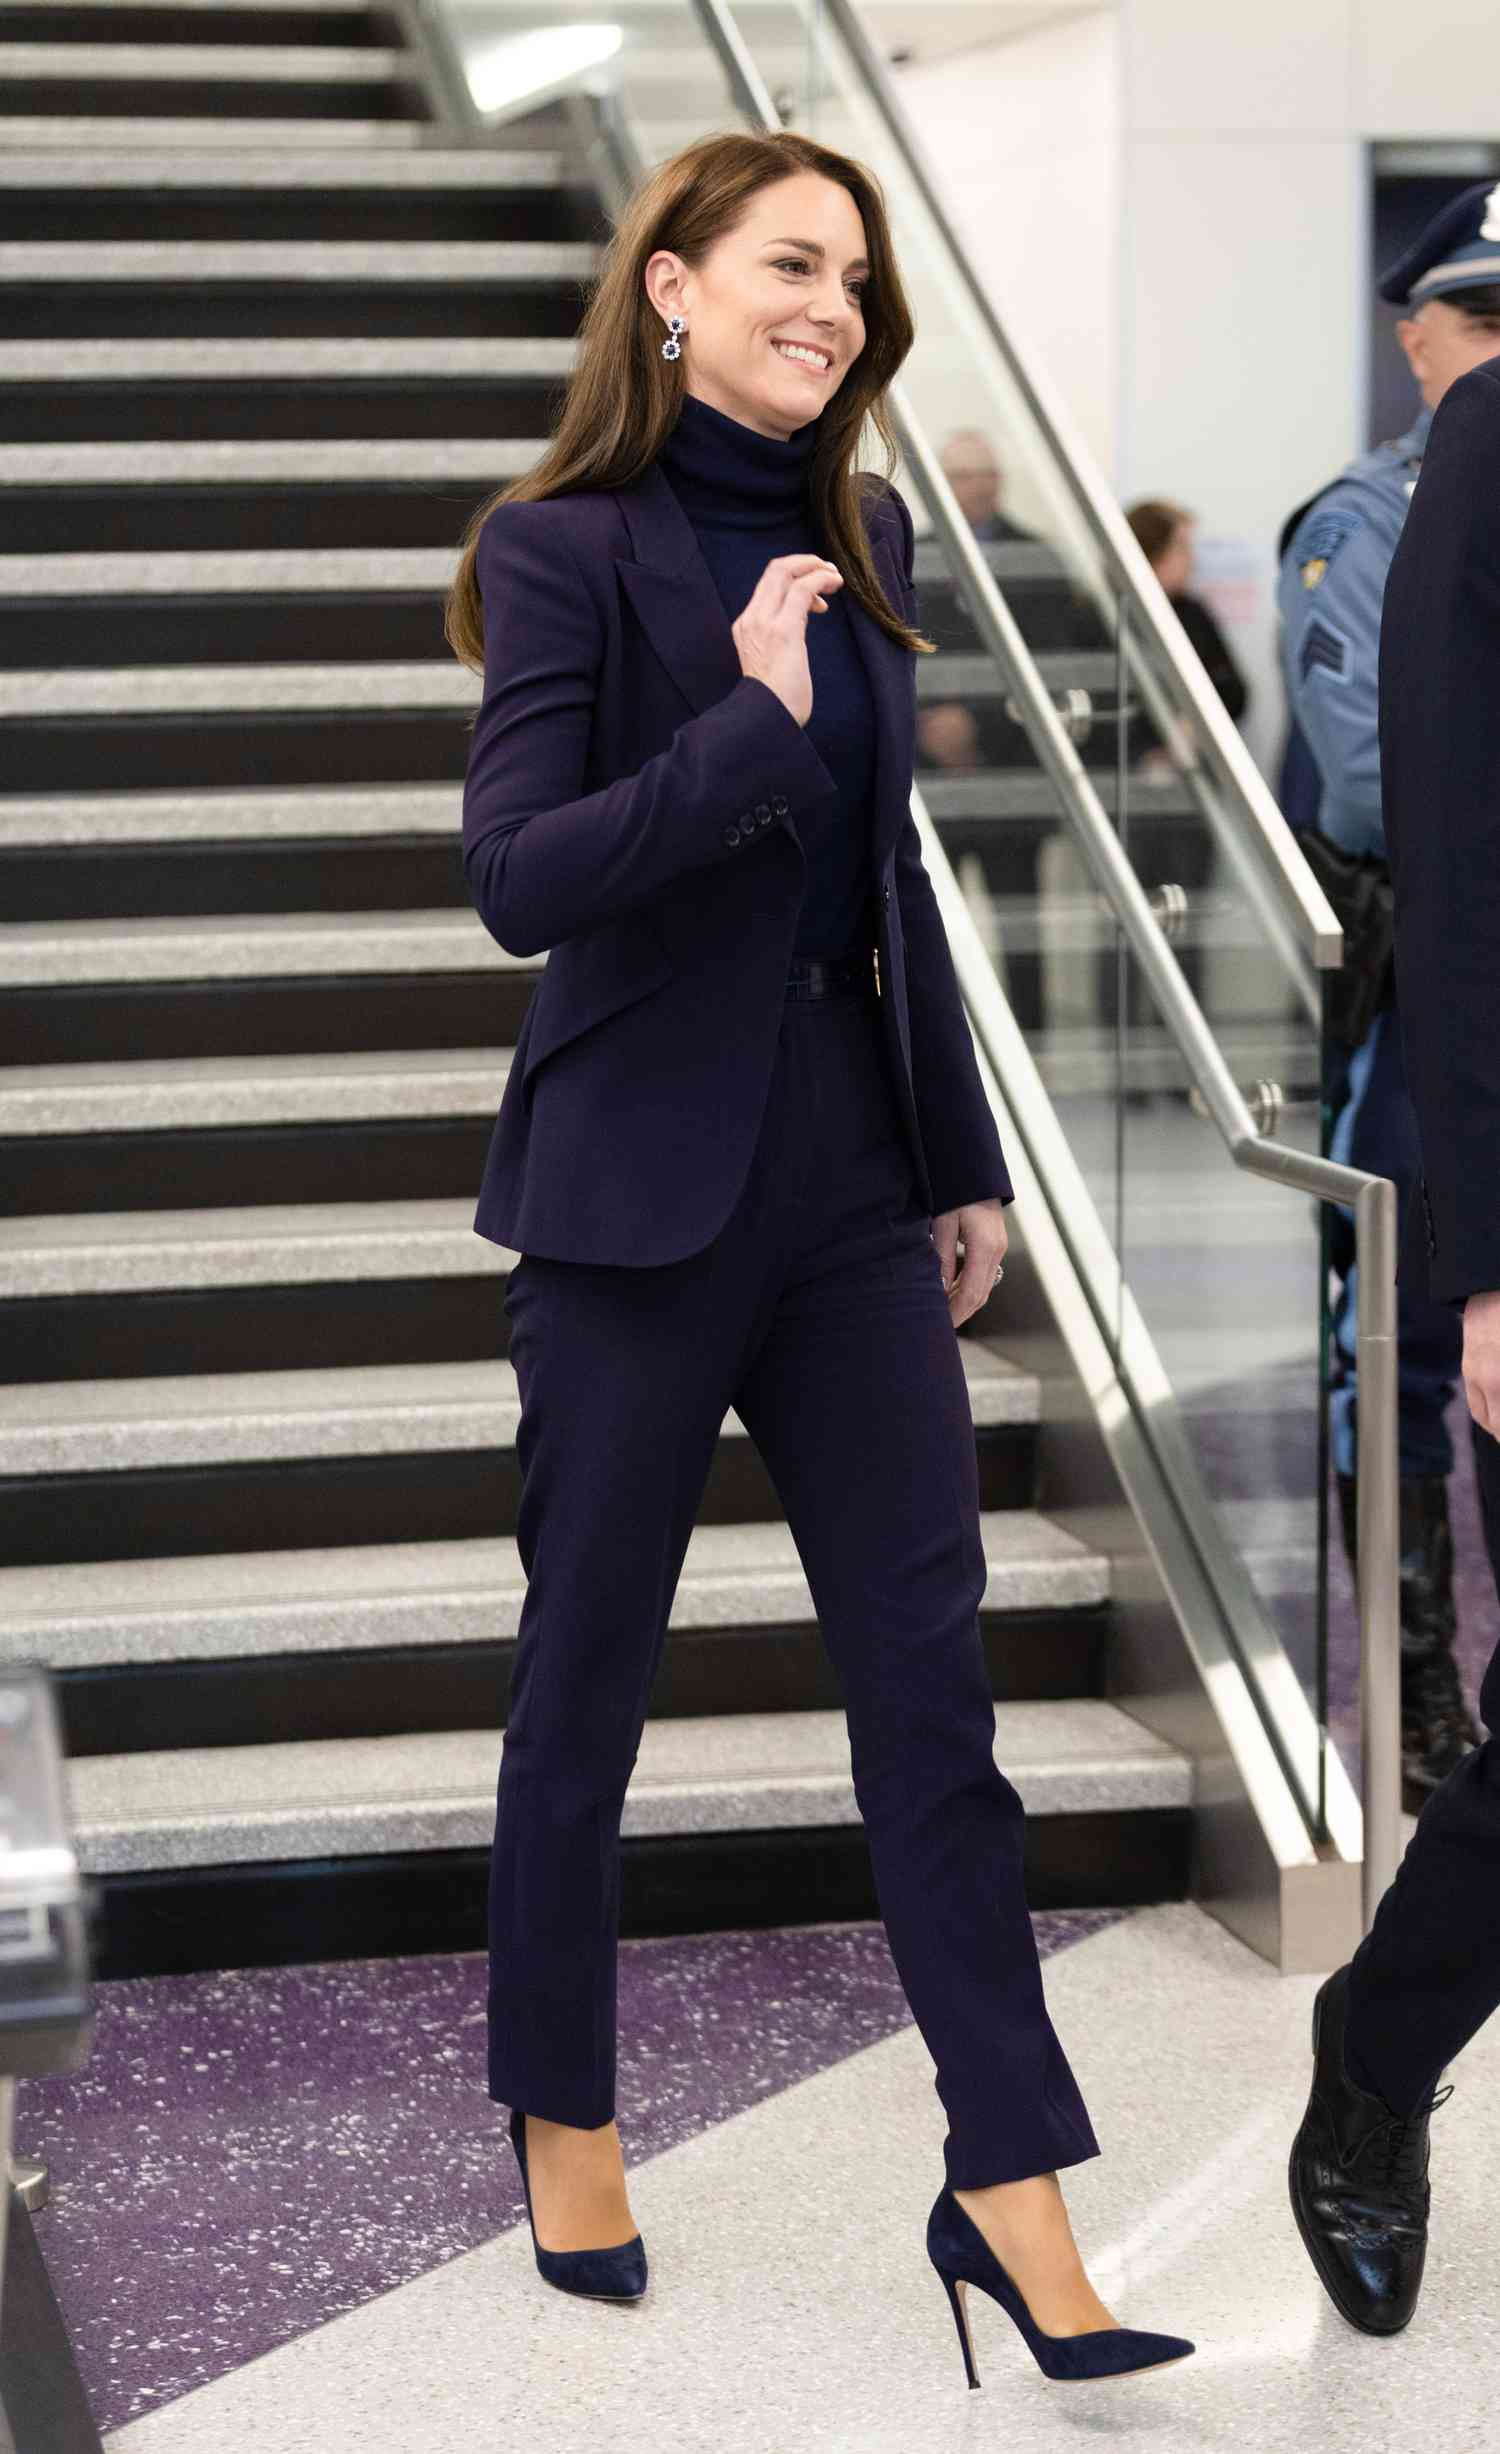 Vương phi Kate có phong cách diện bộ suit đẹp xuất sắc, ngắm là muốn học tập - Ảnh 6.